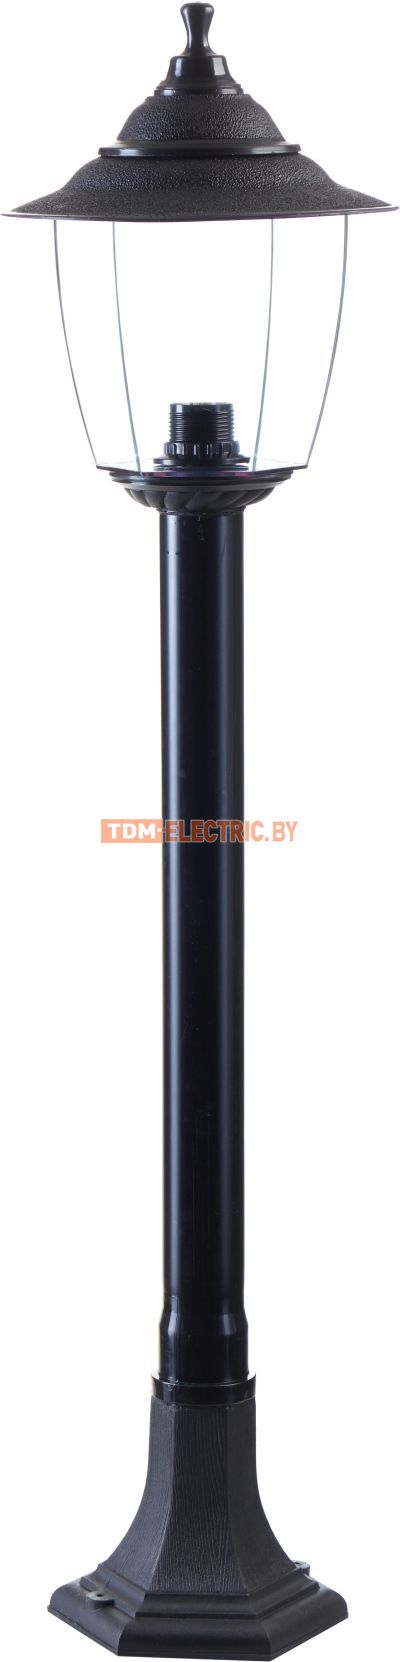 Светильник Прага Эл-11-73-100 60 Вт Е27 напольный на стойке h-1.0 м черный, прозрачный плафон TDM  TDM Electric